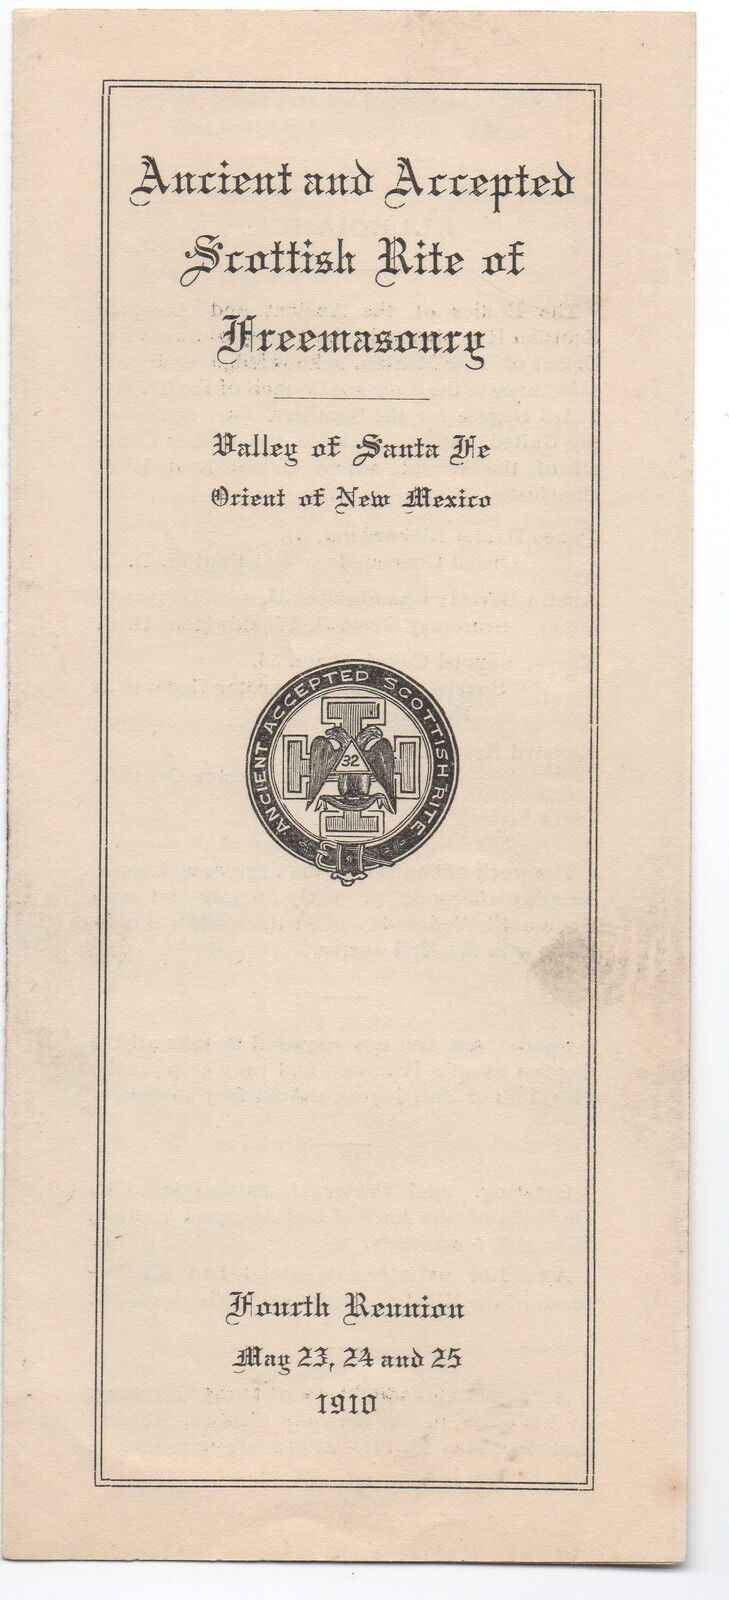 1910 Program from the 4th Reunion of the Freemasons at Santa Fe New Mexico